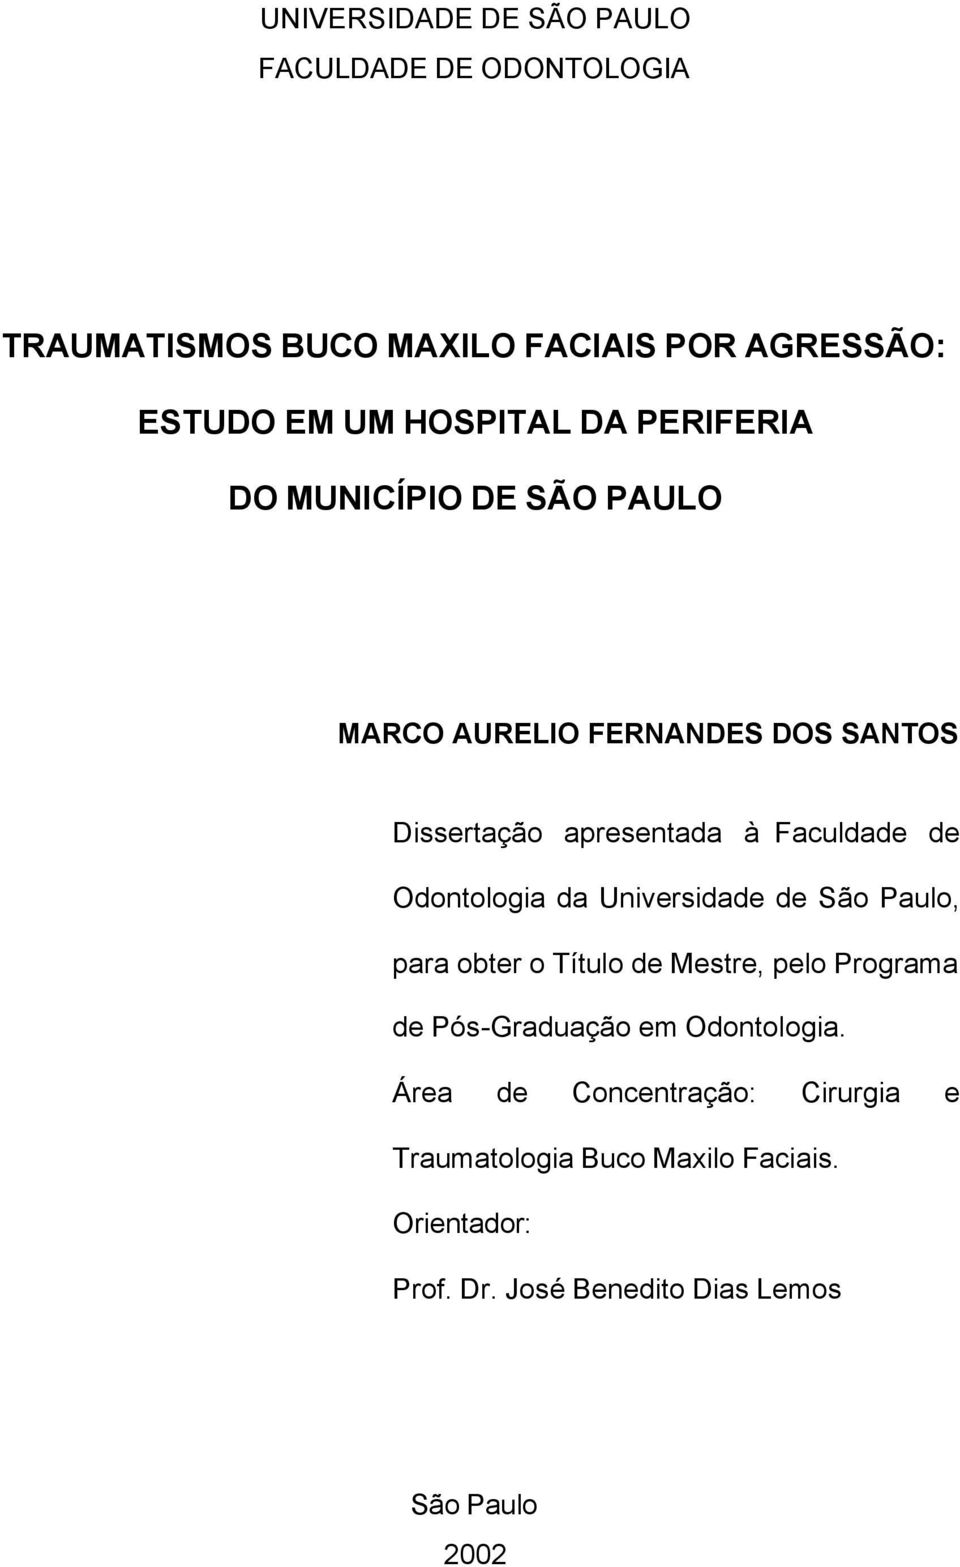 Odontologia da Universidade de São Paulo, para obter o Título de Mestre, pelo Programa de Pós-Graduação em Odontologia.